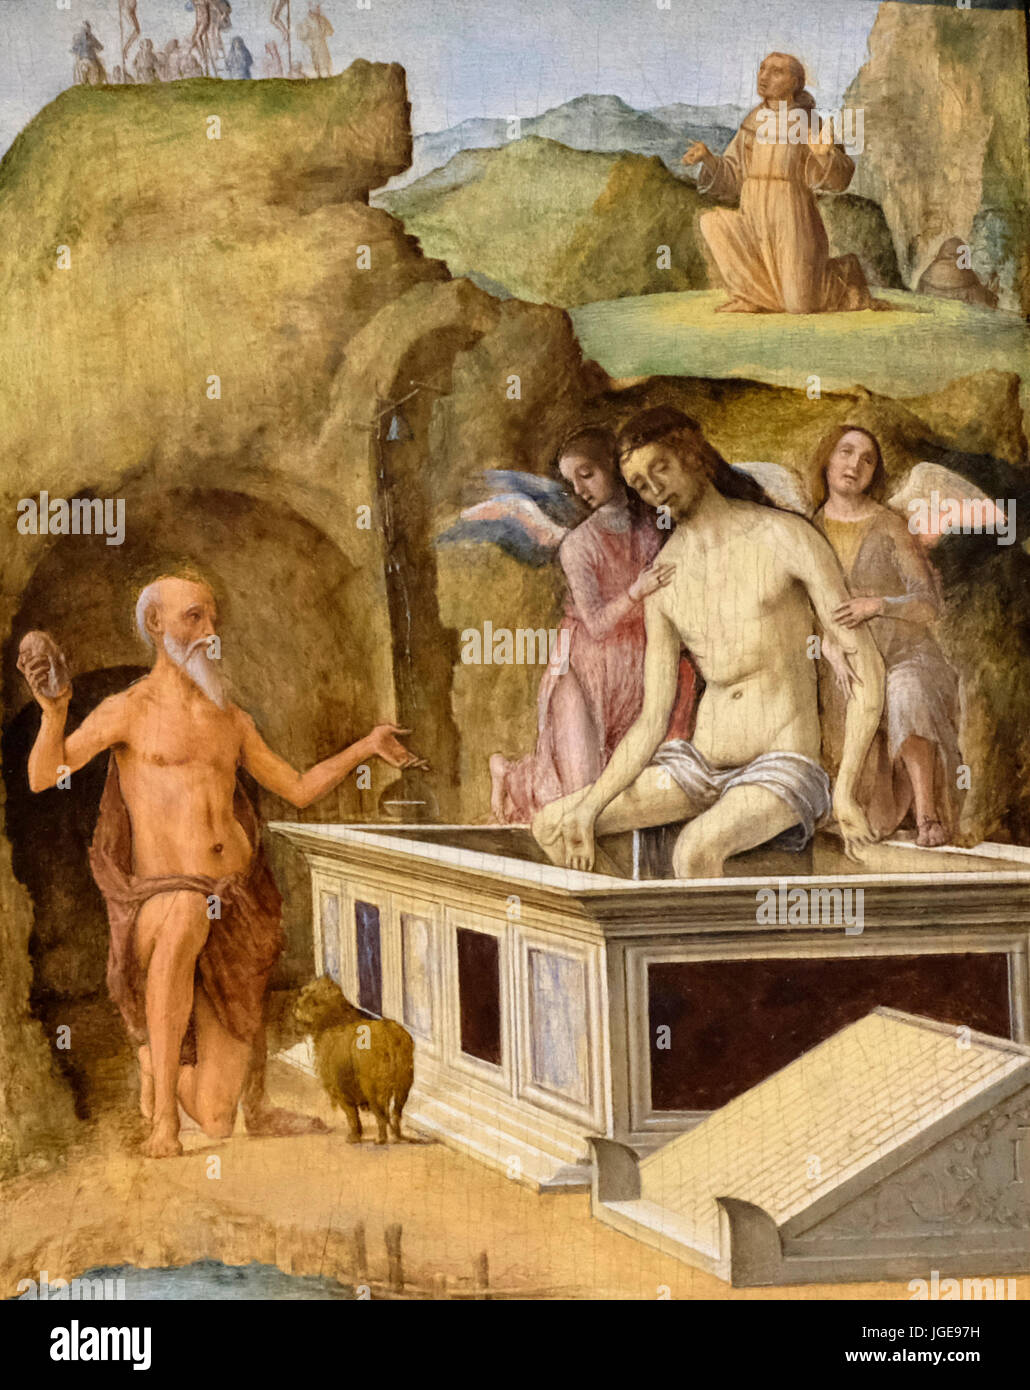 Le Christ mort - Ercole de Roberti, vers 1490 Banque D'Images